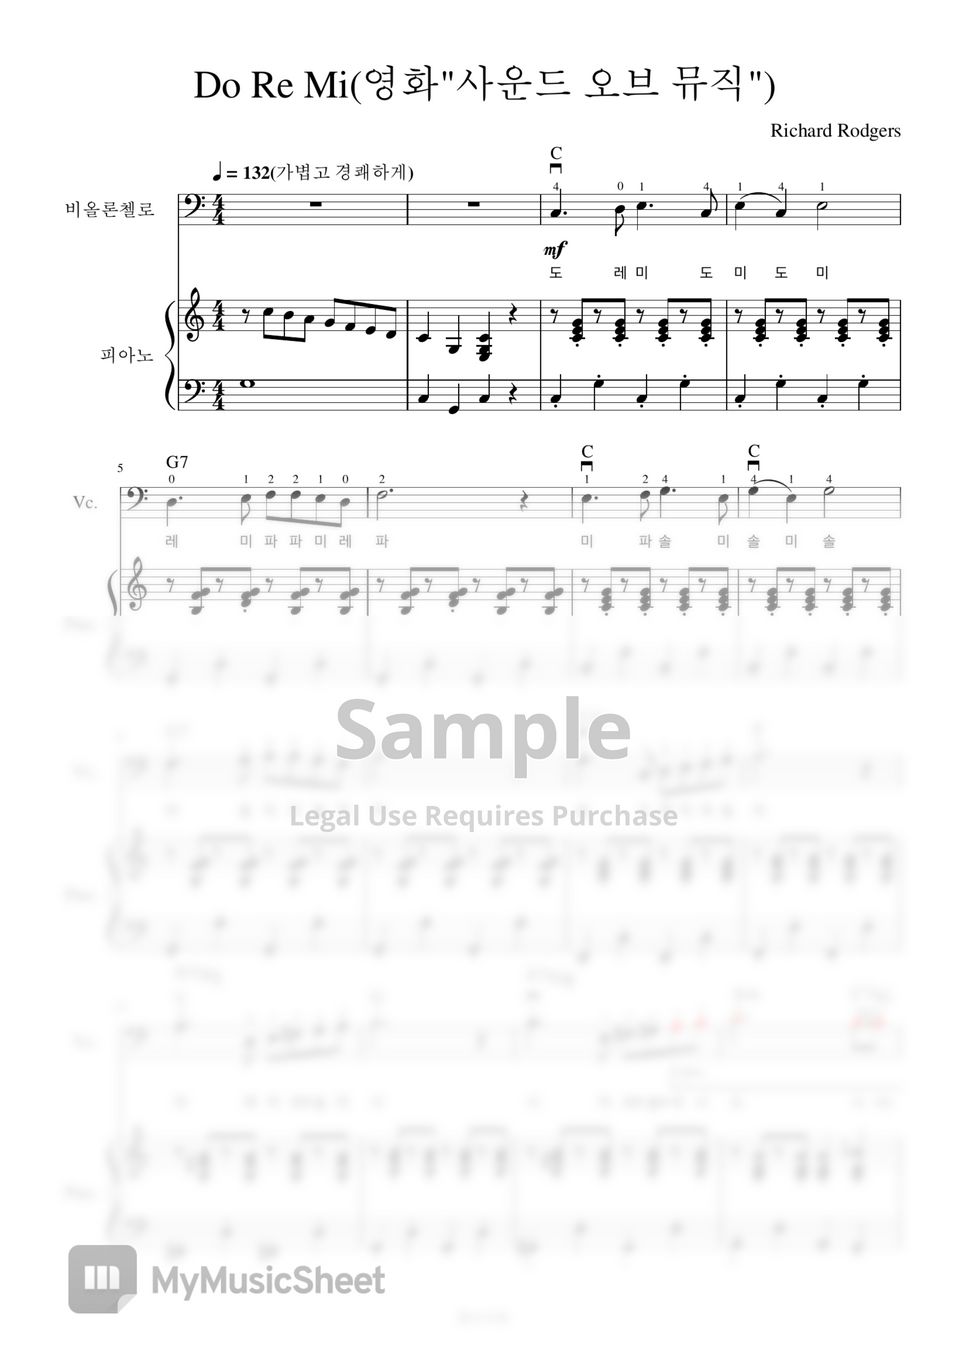 Richard Rodgers - Do Re Mi(도레미송) (첼로+피아노, 계이름 & 손가락 번호 포함) by 첼로마을